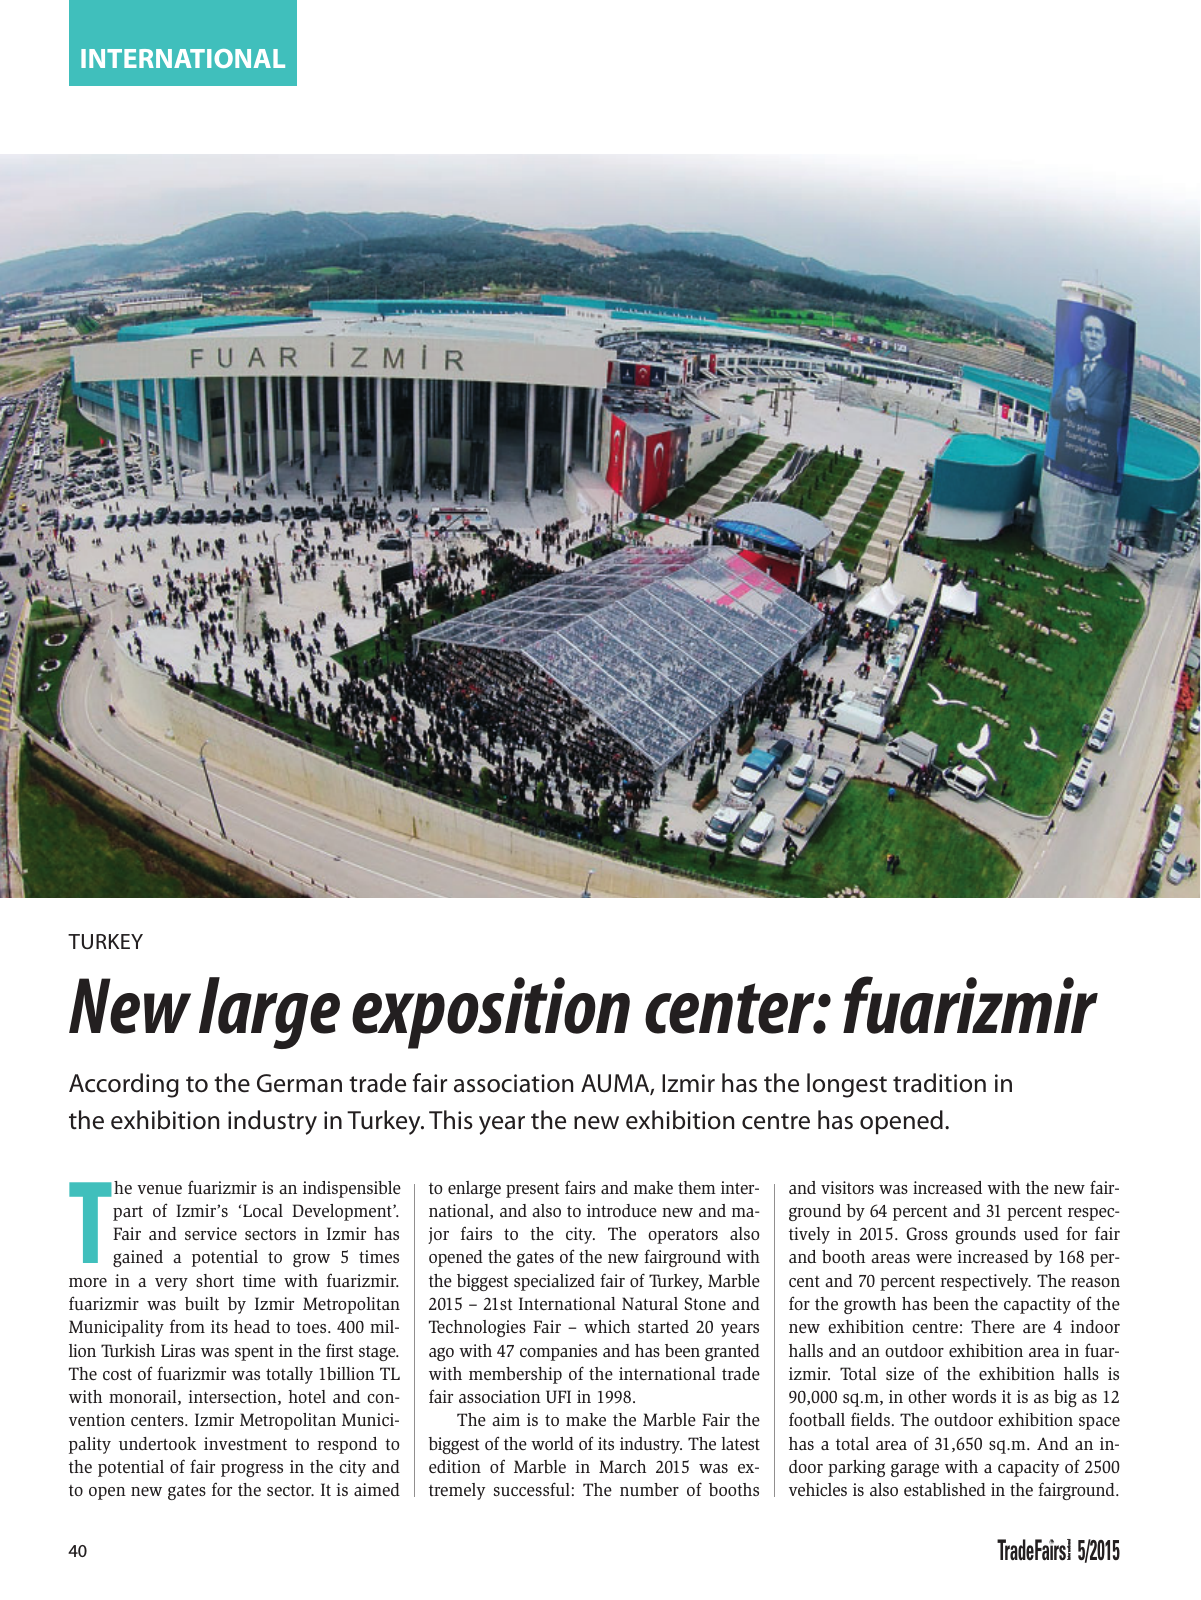 Vorschau TFI Trade-Fairs-International 05/2015 Seite 40